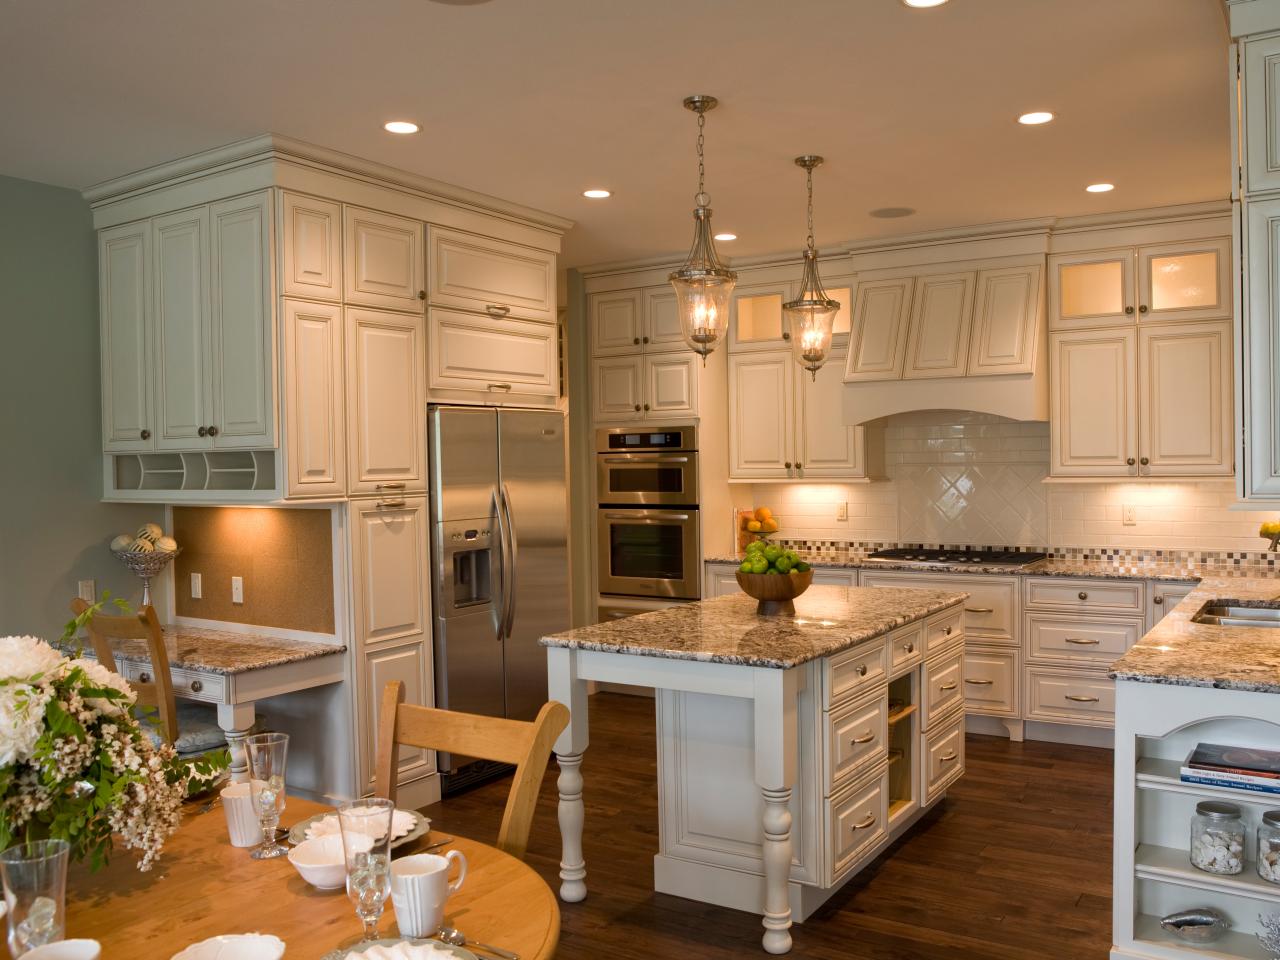 Kitchen Layout Templates: 6 Different Designs | HGTV